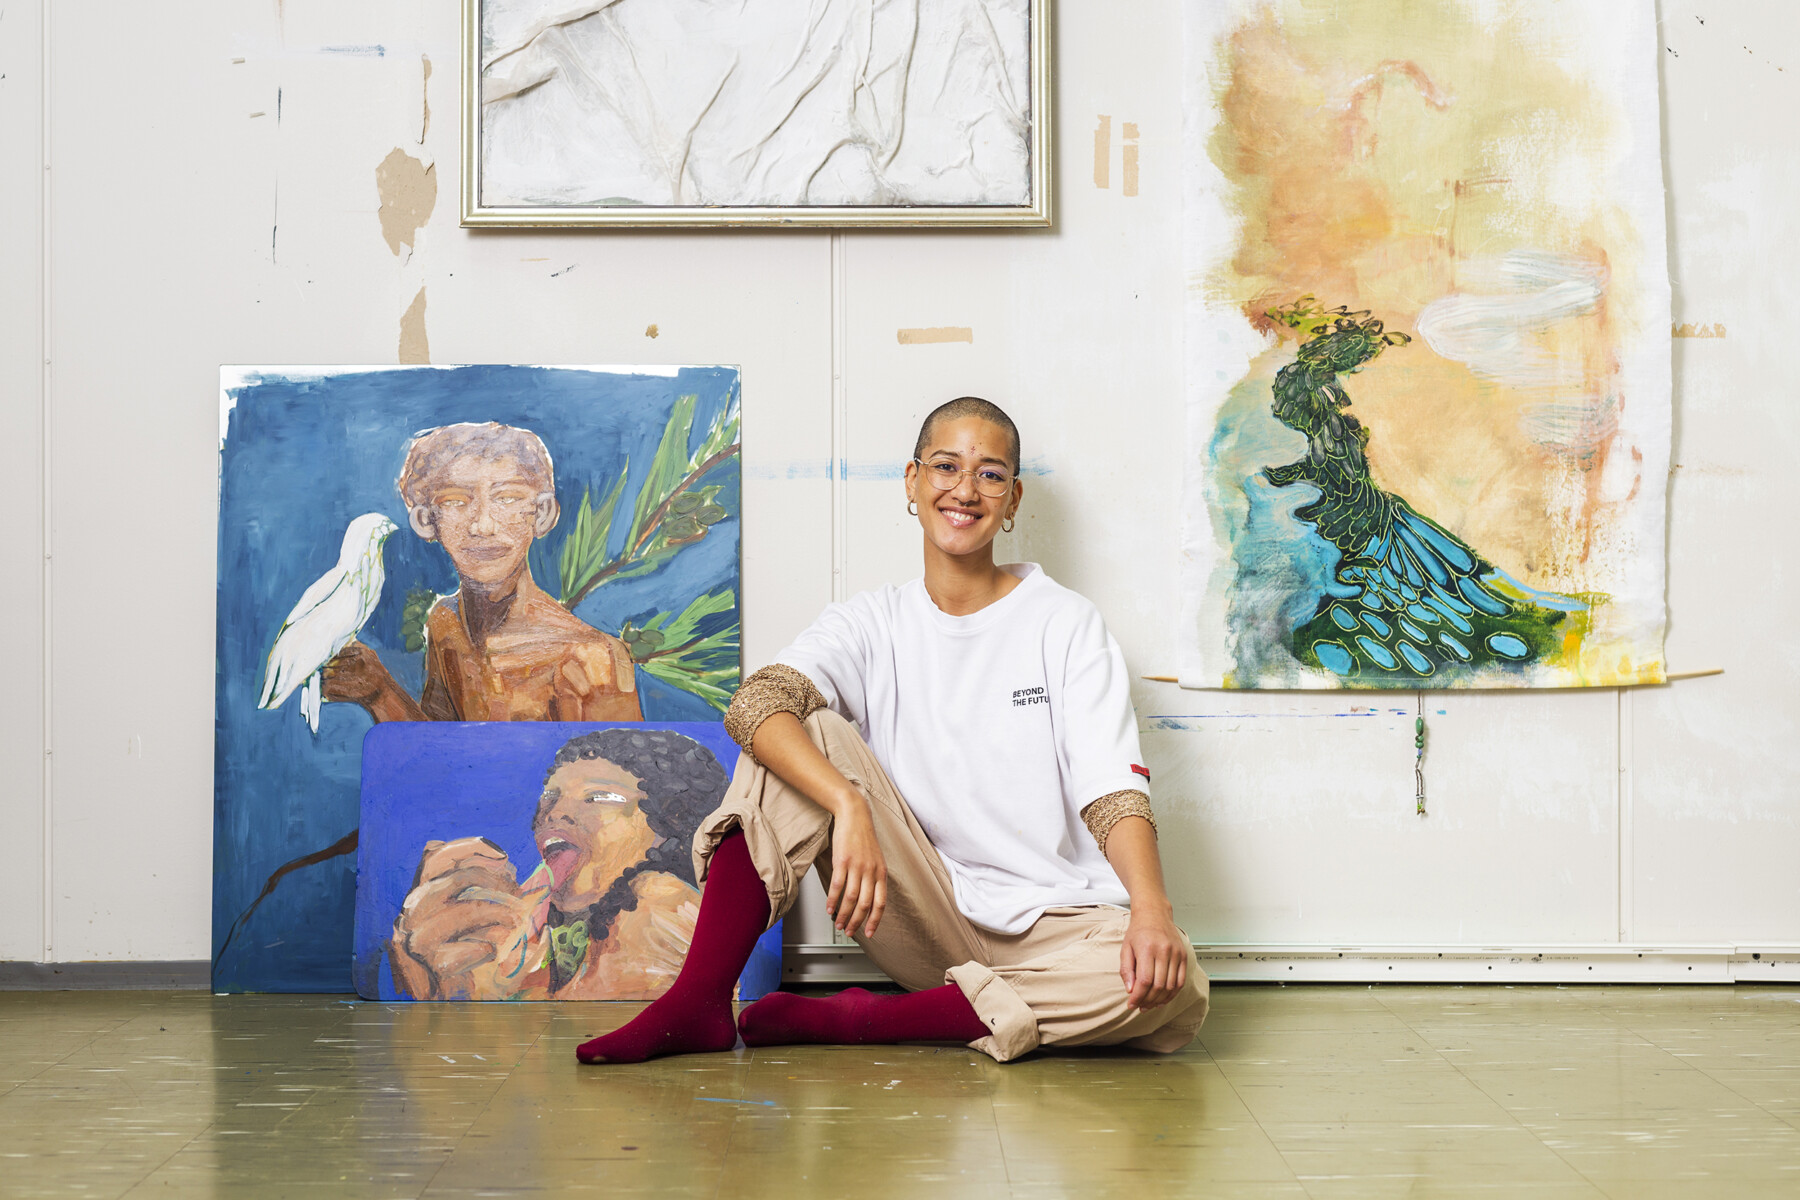 Una persona con el pelo muy corto posa sentada en el suelo de un estudio de arte con cuadros en la pared.